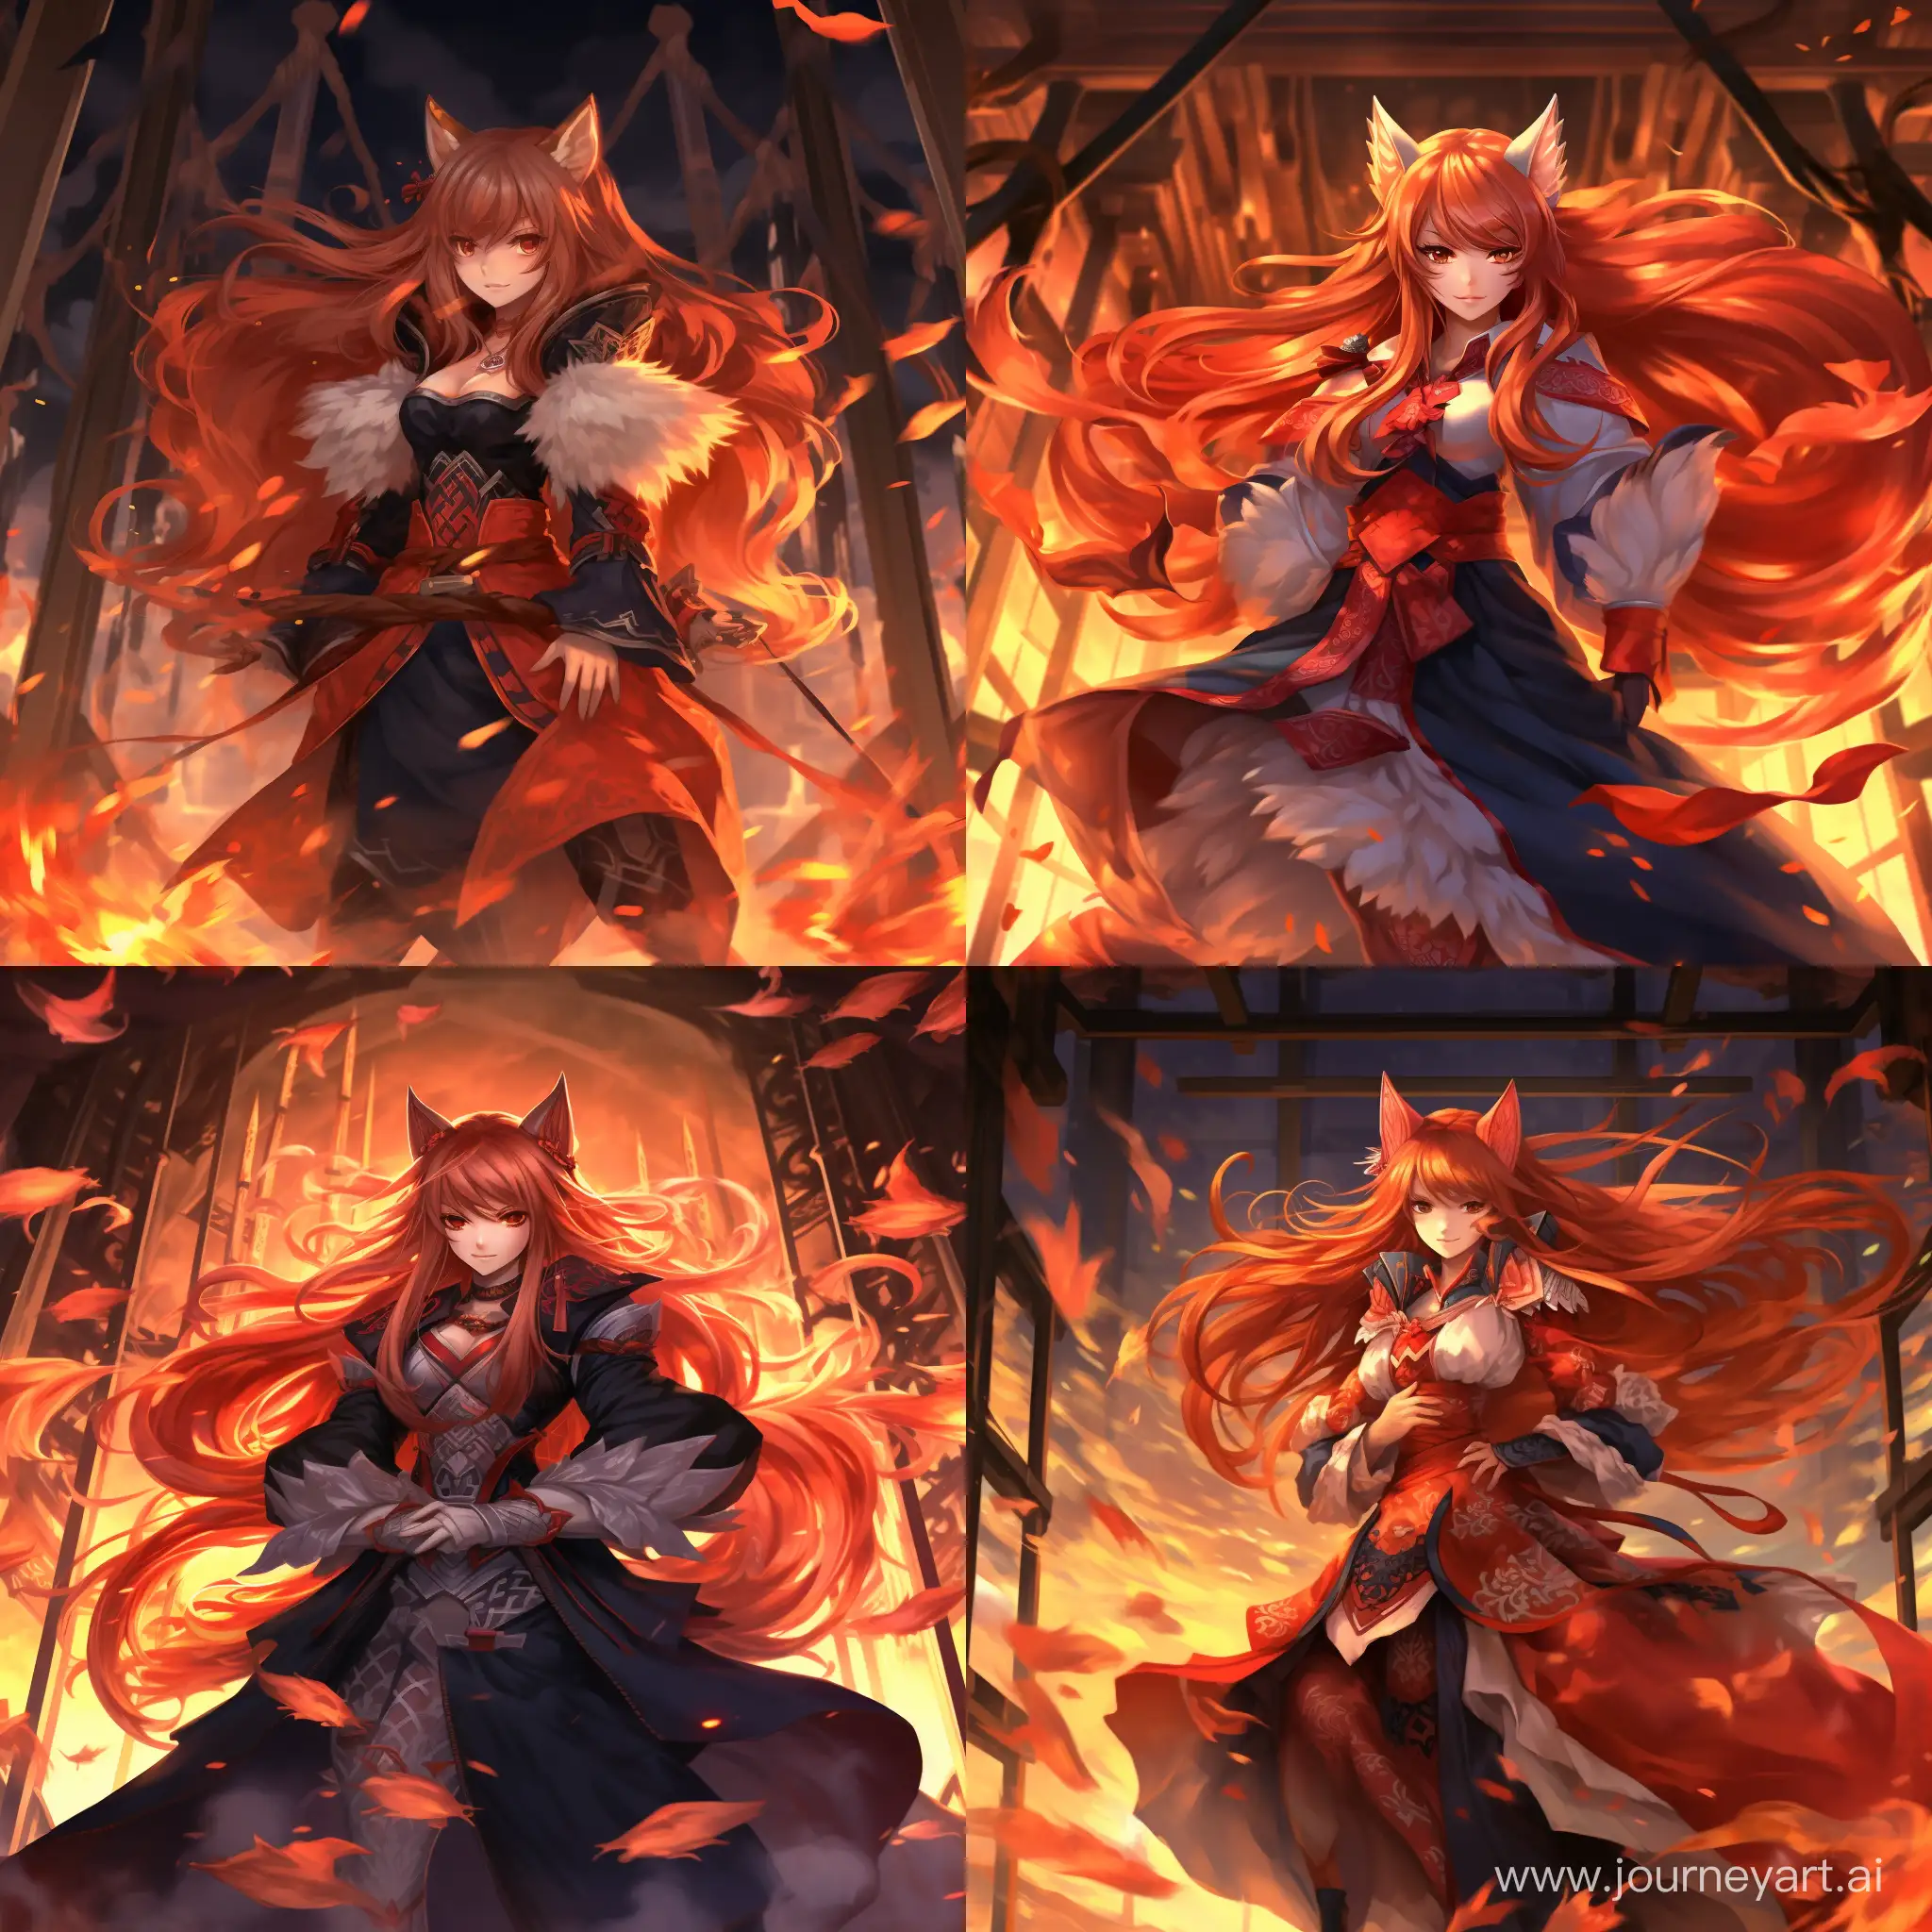 Fiery-Kitsune-Sorceress-Spellbinding-Anime-Art-in-4K